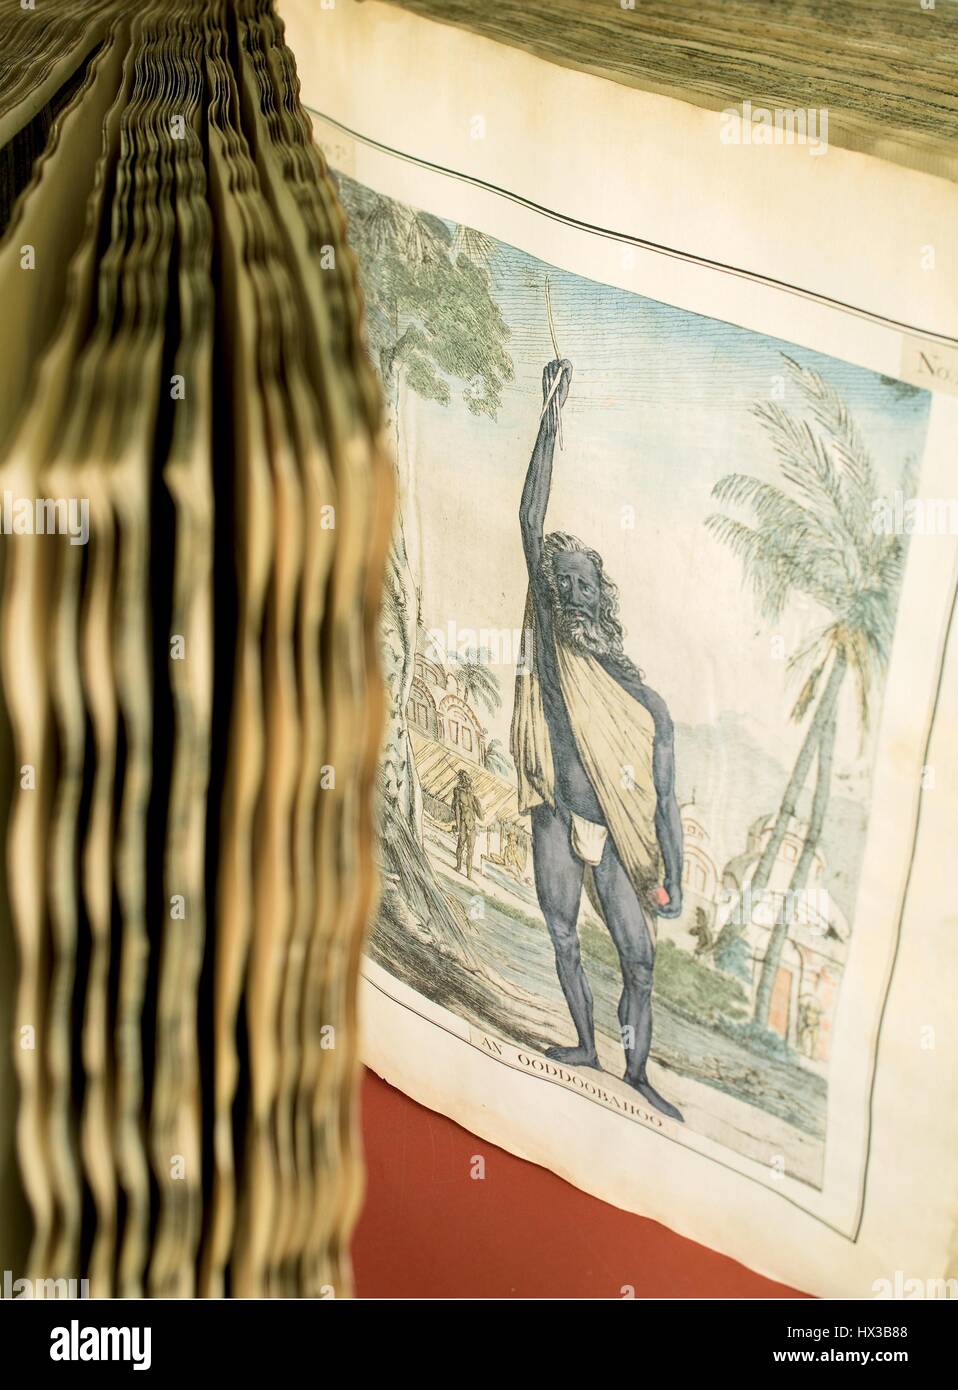 El libro "Colección de doscientos y cincuenta aguafuertes de color' por Francois Balthazar Solvyns (1760-1824) está abierta a una página que contiene un grabado coloreado de un asceta con su brazo derecho elevado, 1796. Cortesía de la Biblioteca Nacional de Medicina. Foto de stock